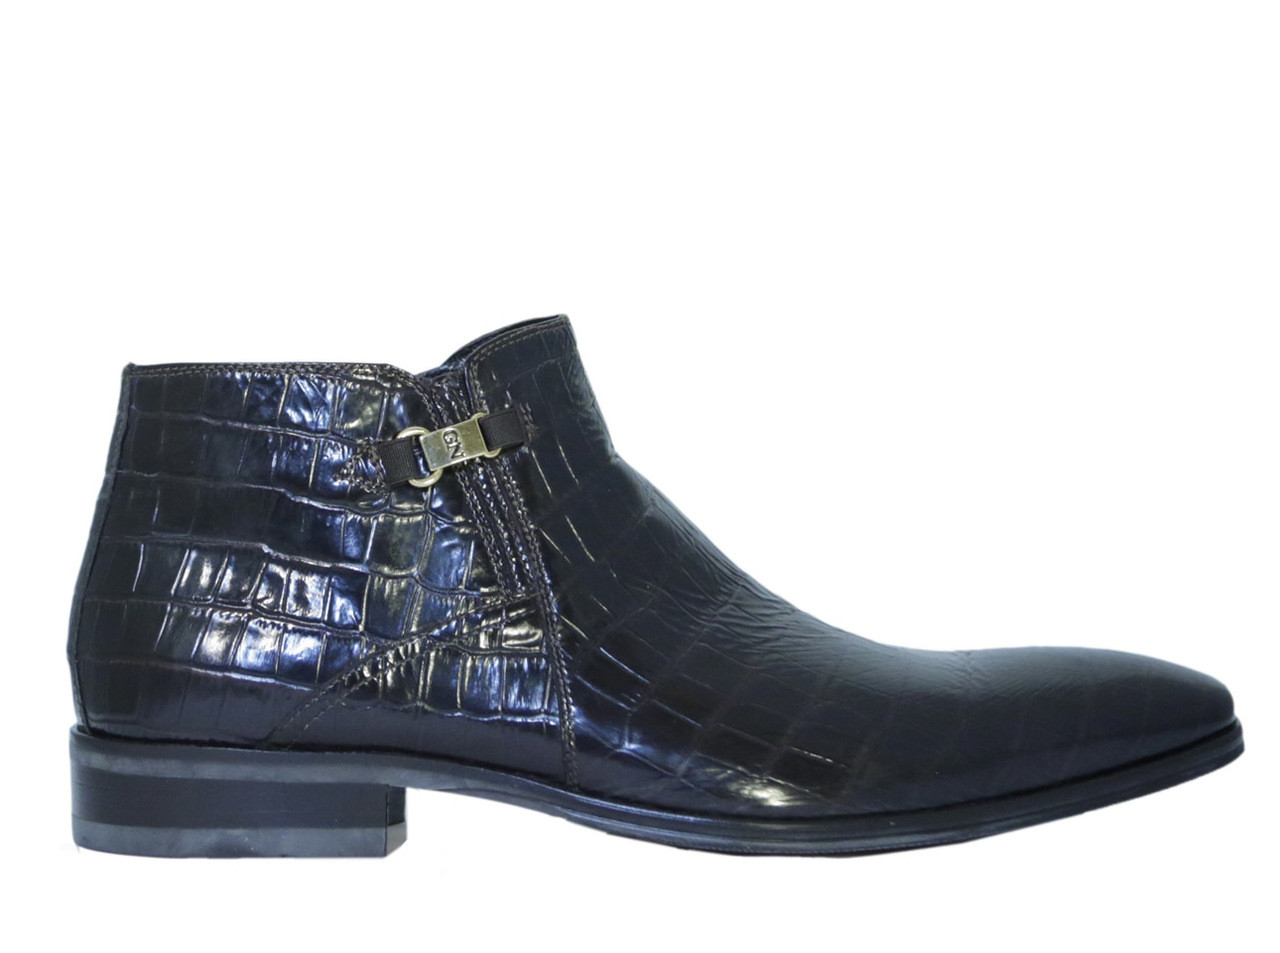 Louis Vuitton Men's Black Shiny Leather Lace up Dress Shoes UK 8.5 /  US 9.5